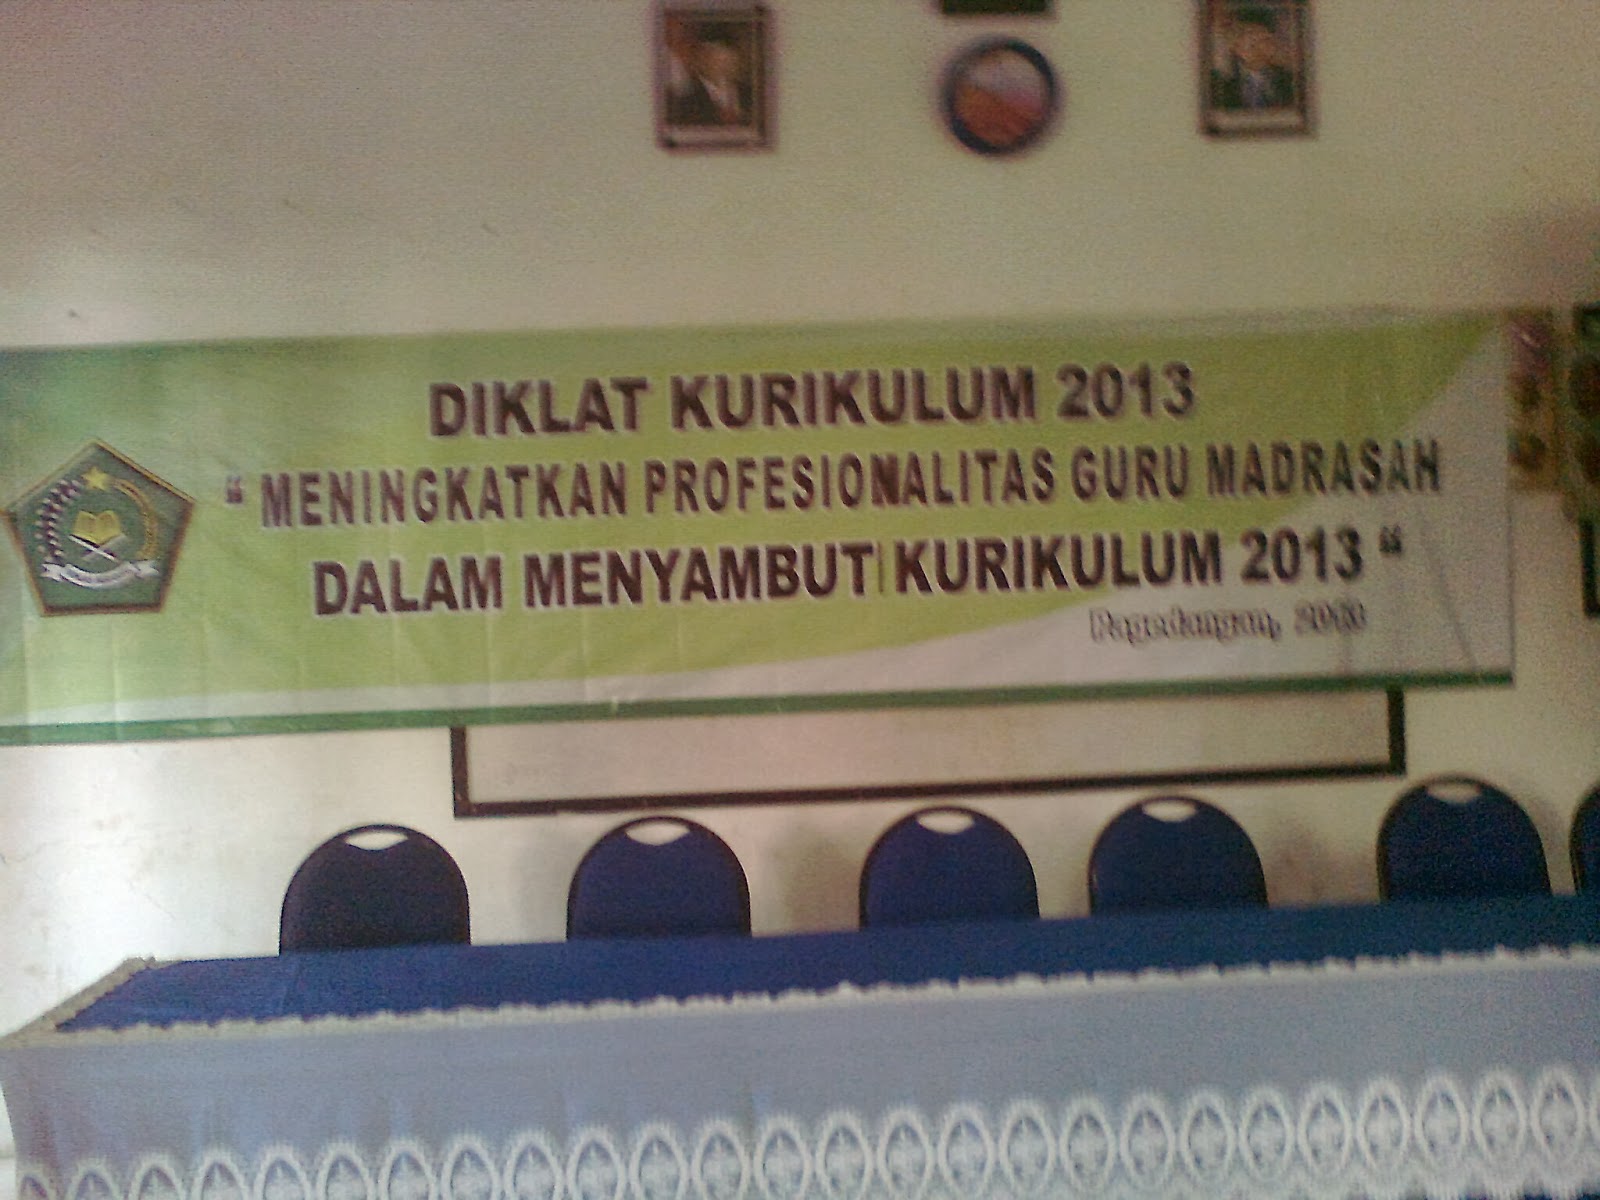 Dalam rangka mesosialisasikan kurikulum 2013 yang diberlakukan oleh pemerintah maka MTsN Legok Kabupaten Tangerang menyelenggarakan Diklat Kurikulum 2013